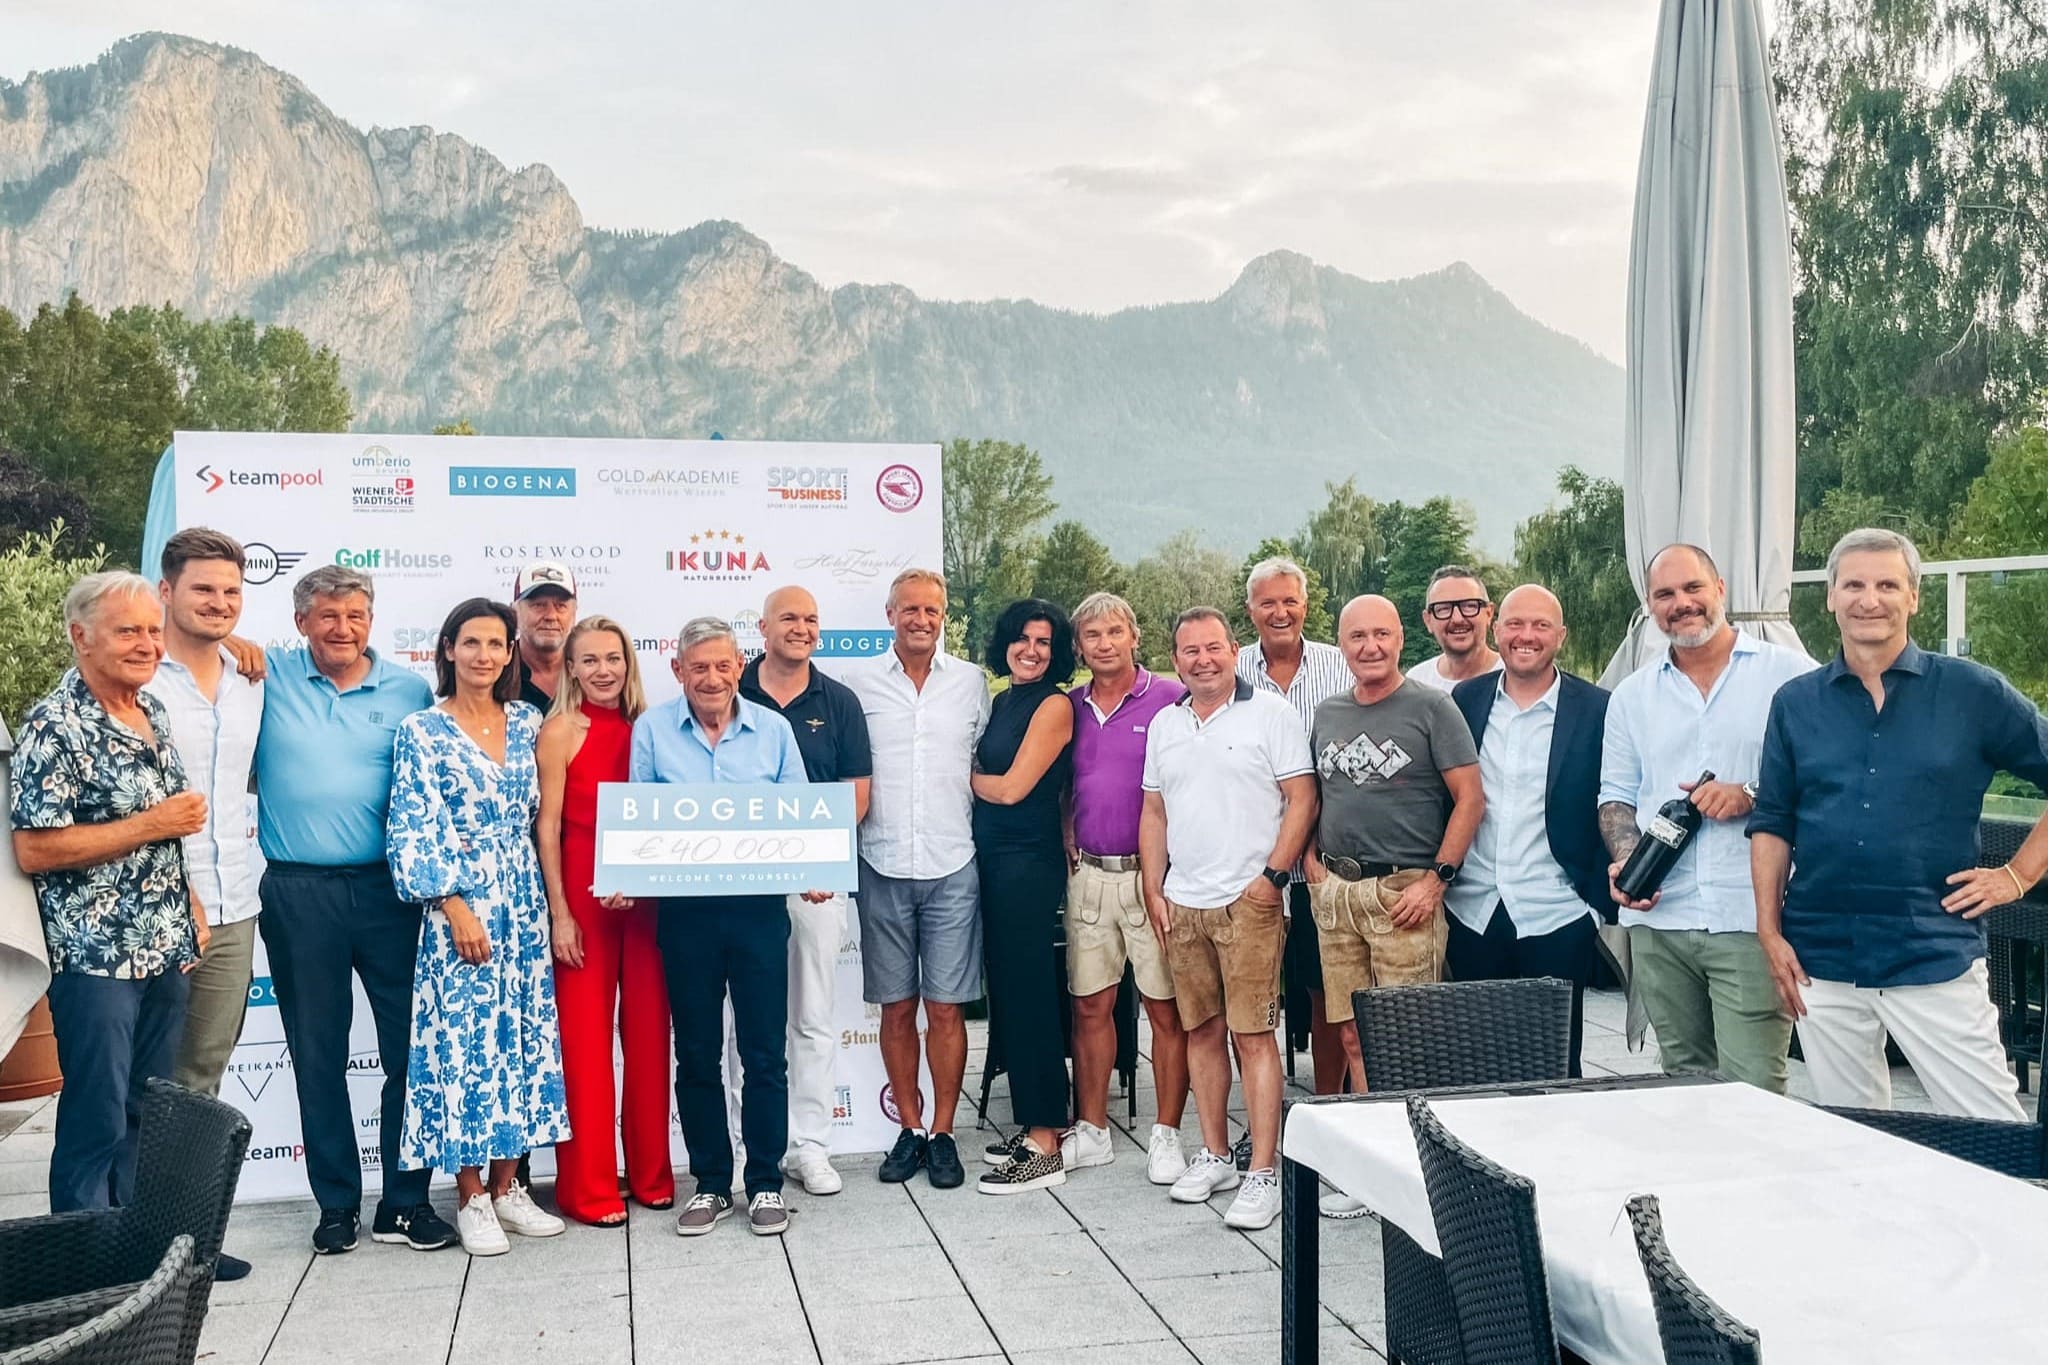 Biogena Golf Charity Turnier: 40.000 Euro für den guten Zweck [Klub 100]